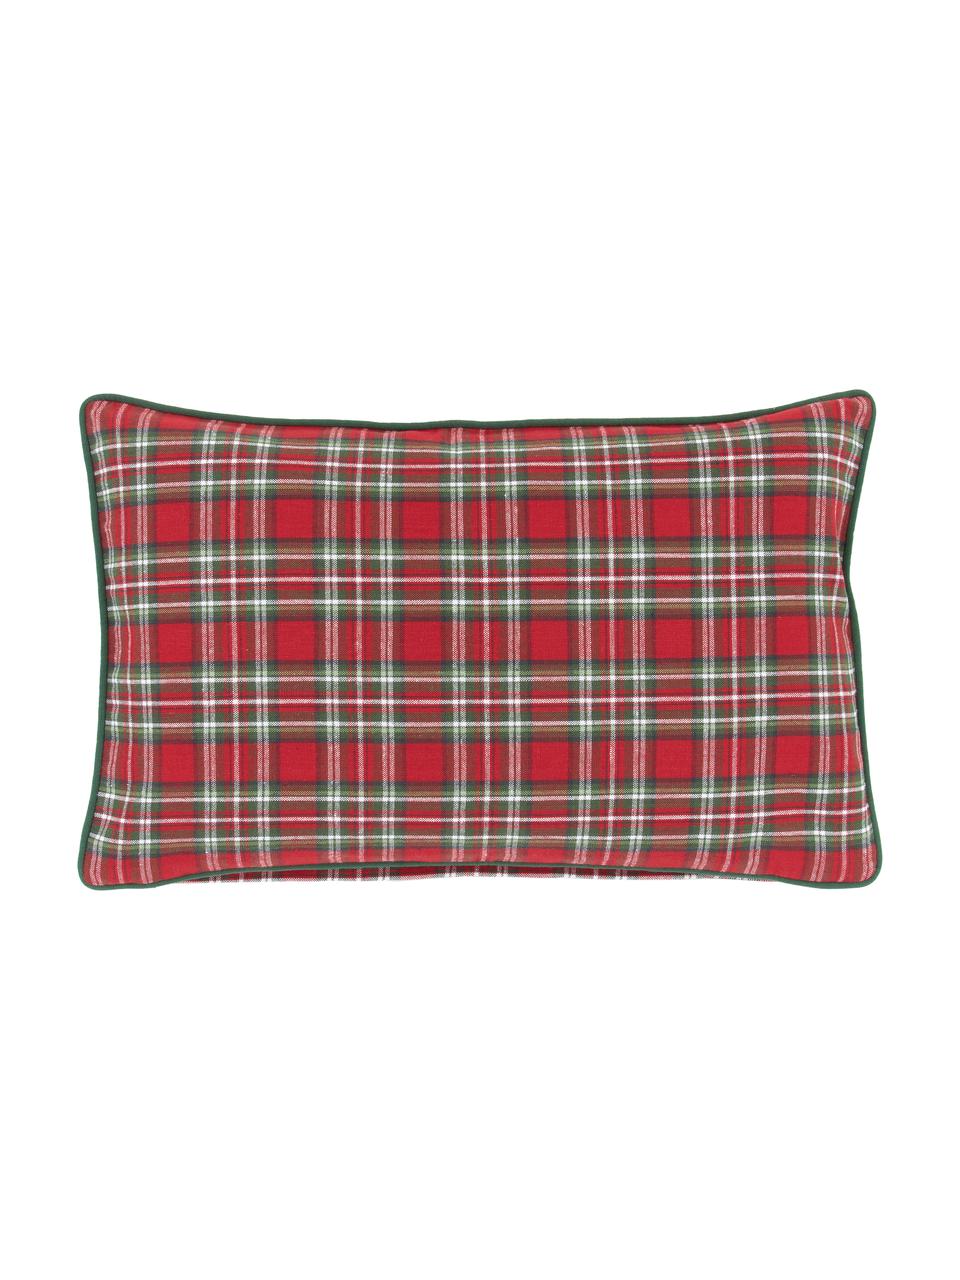 Poszewka na poduszkę Tartan, 100% bawełna, Czerwony, ciemny zielony, S 30 x D 50 cm